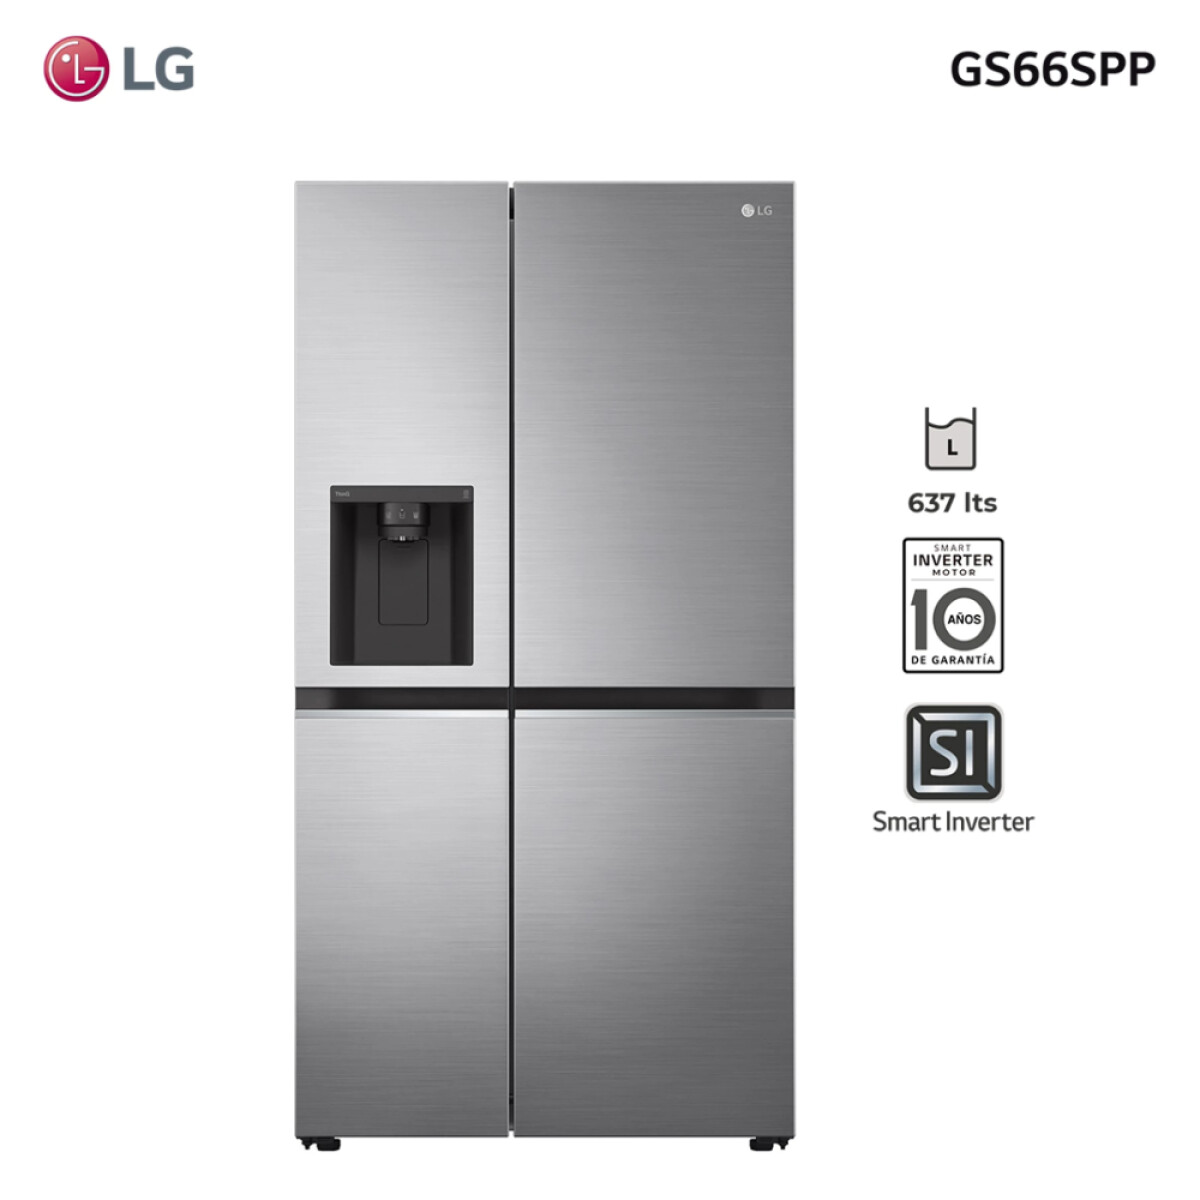 Refrigerador inverter LG GS66SPP 637L 